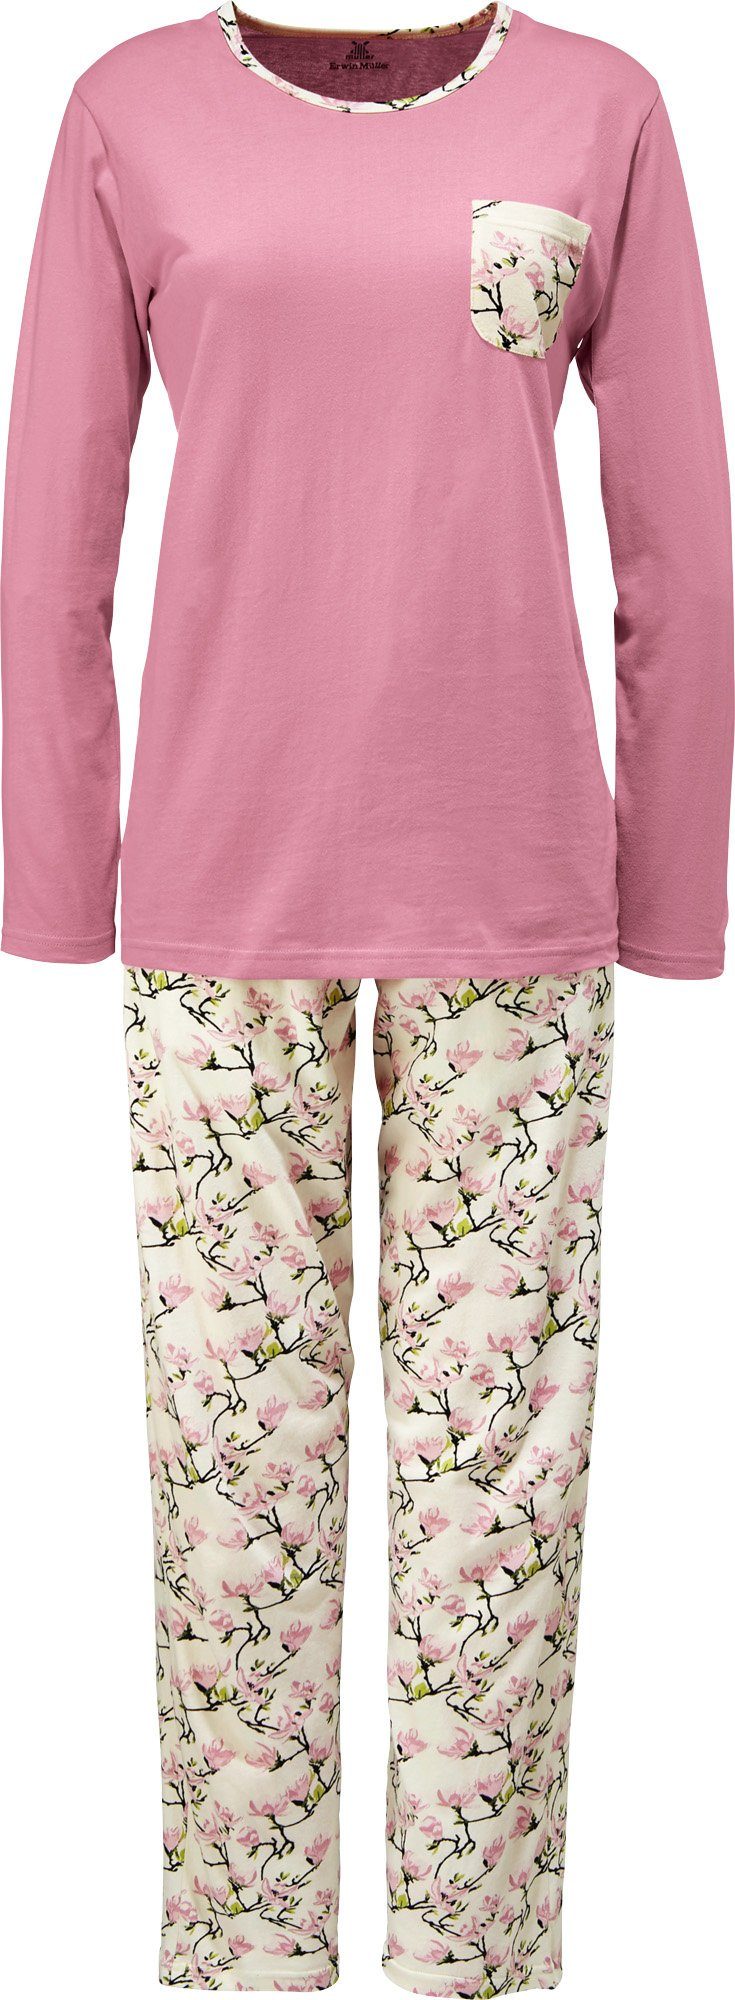 Erwin Müller Pyjama Damen-Schlafanzug Single-Jersey Blumen